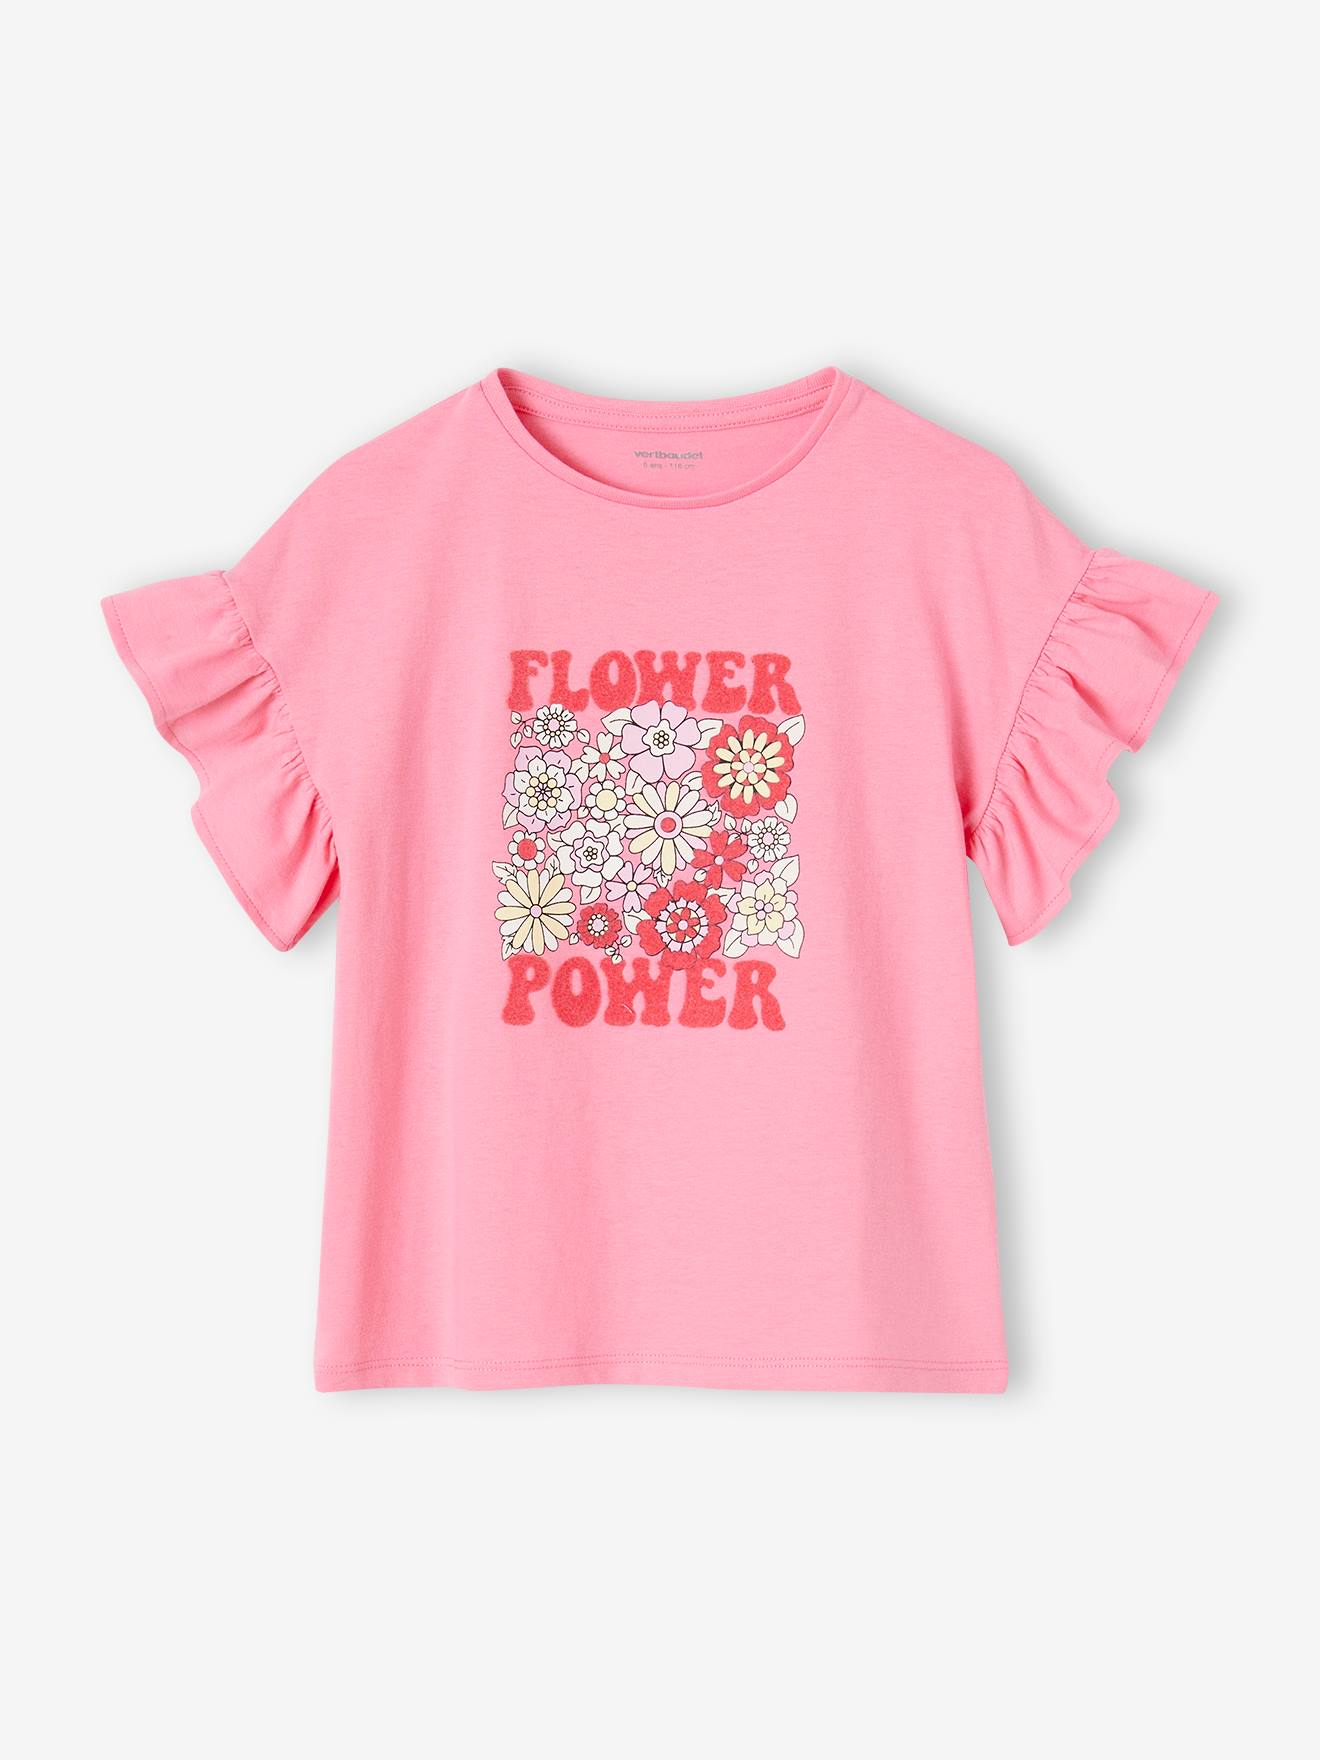 Meisjesshirt "Flower Power" met ruches op de mouwen snoepjesroze